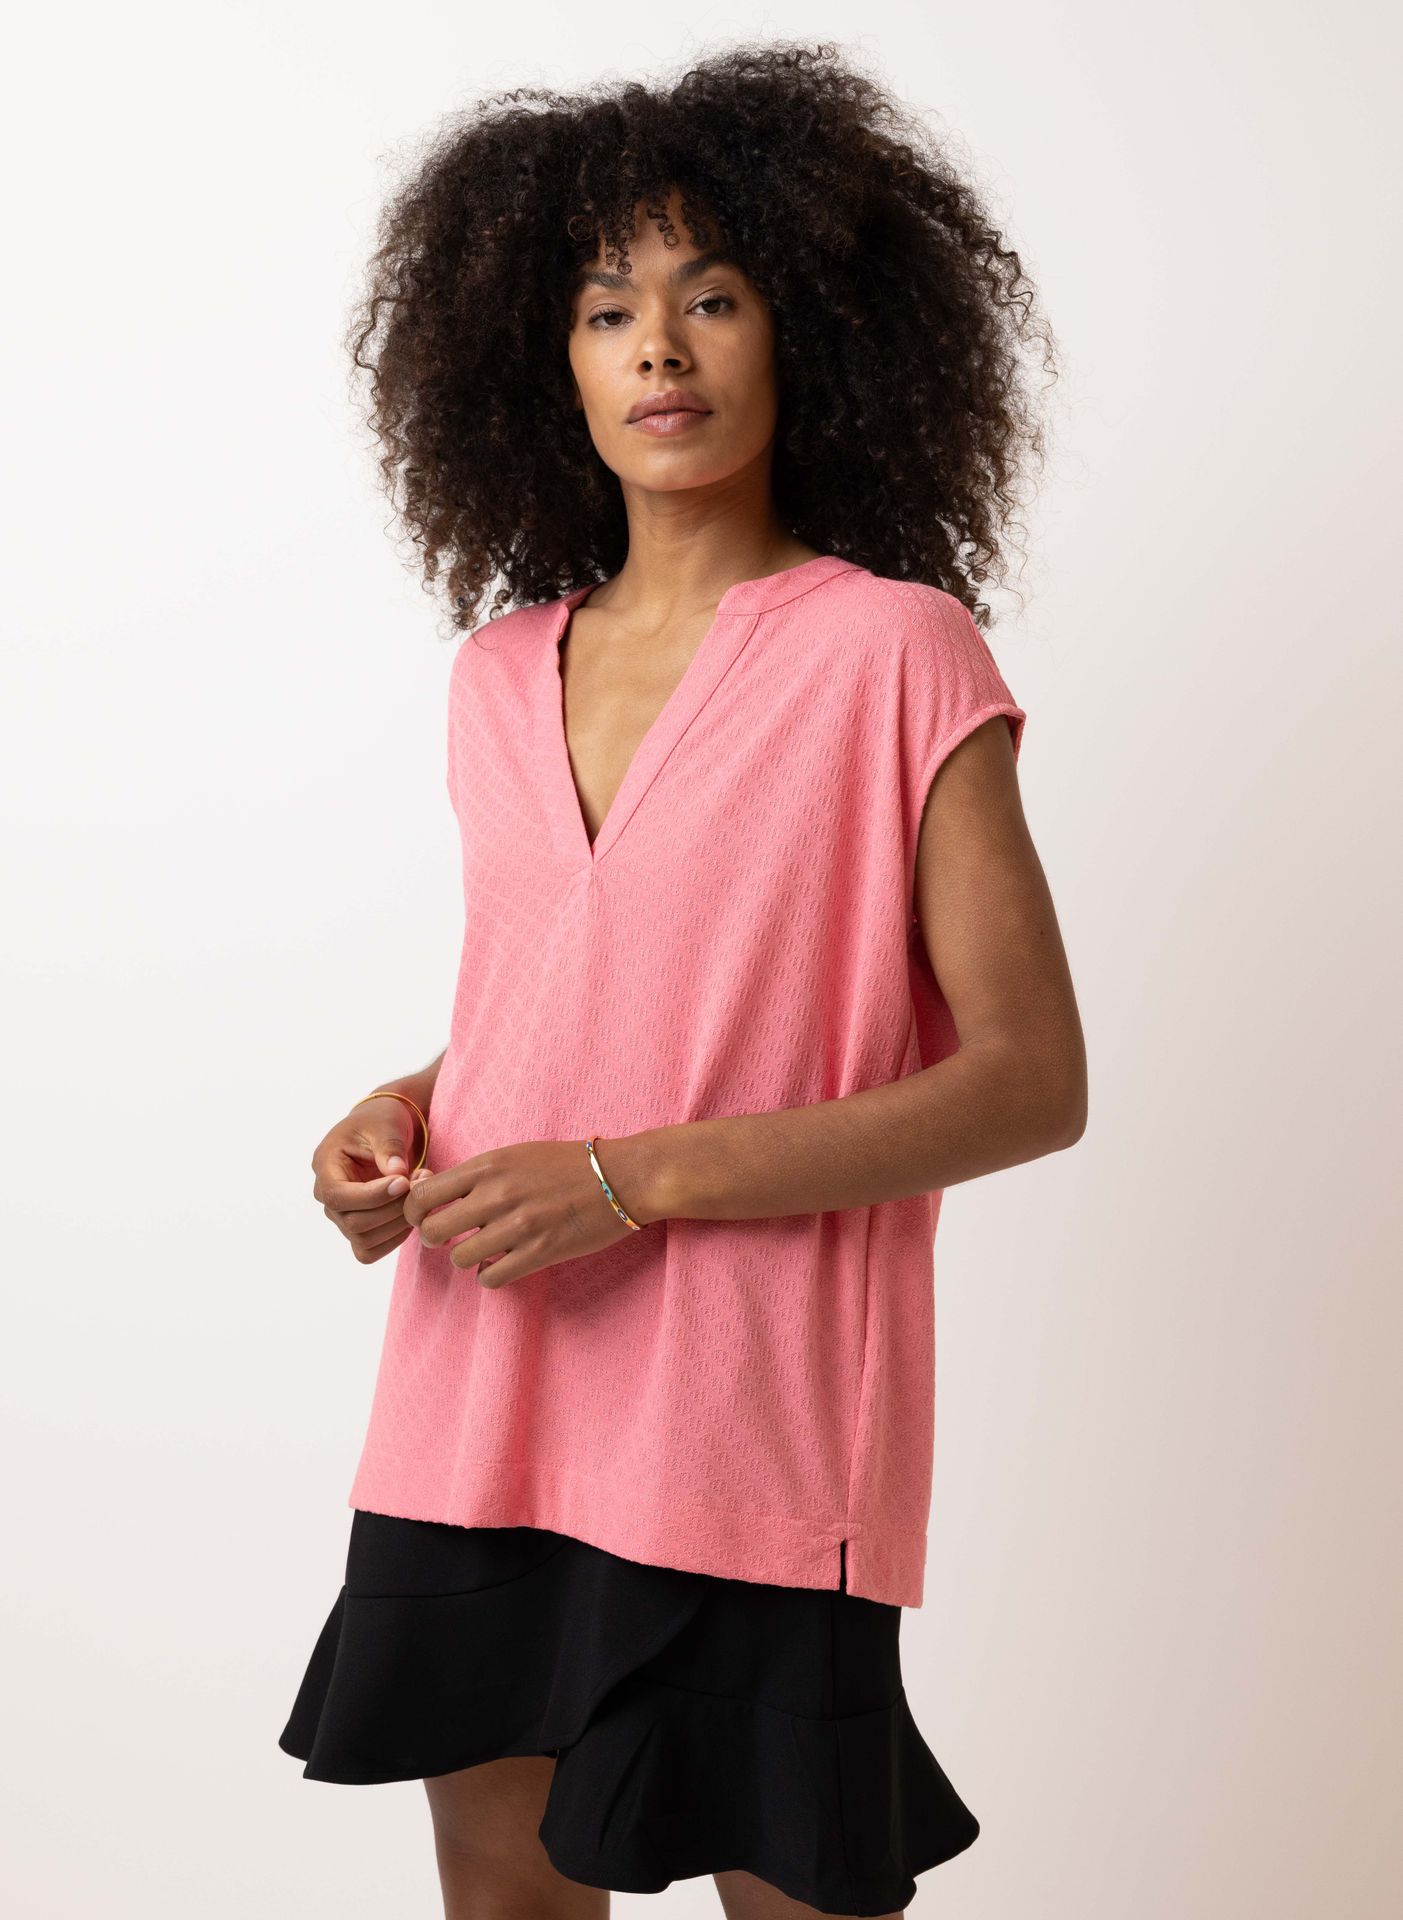 Norah Roze shirt pink 214789-900